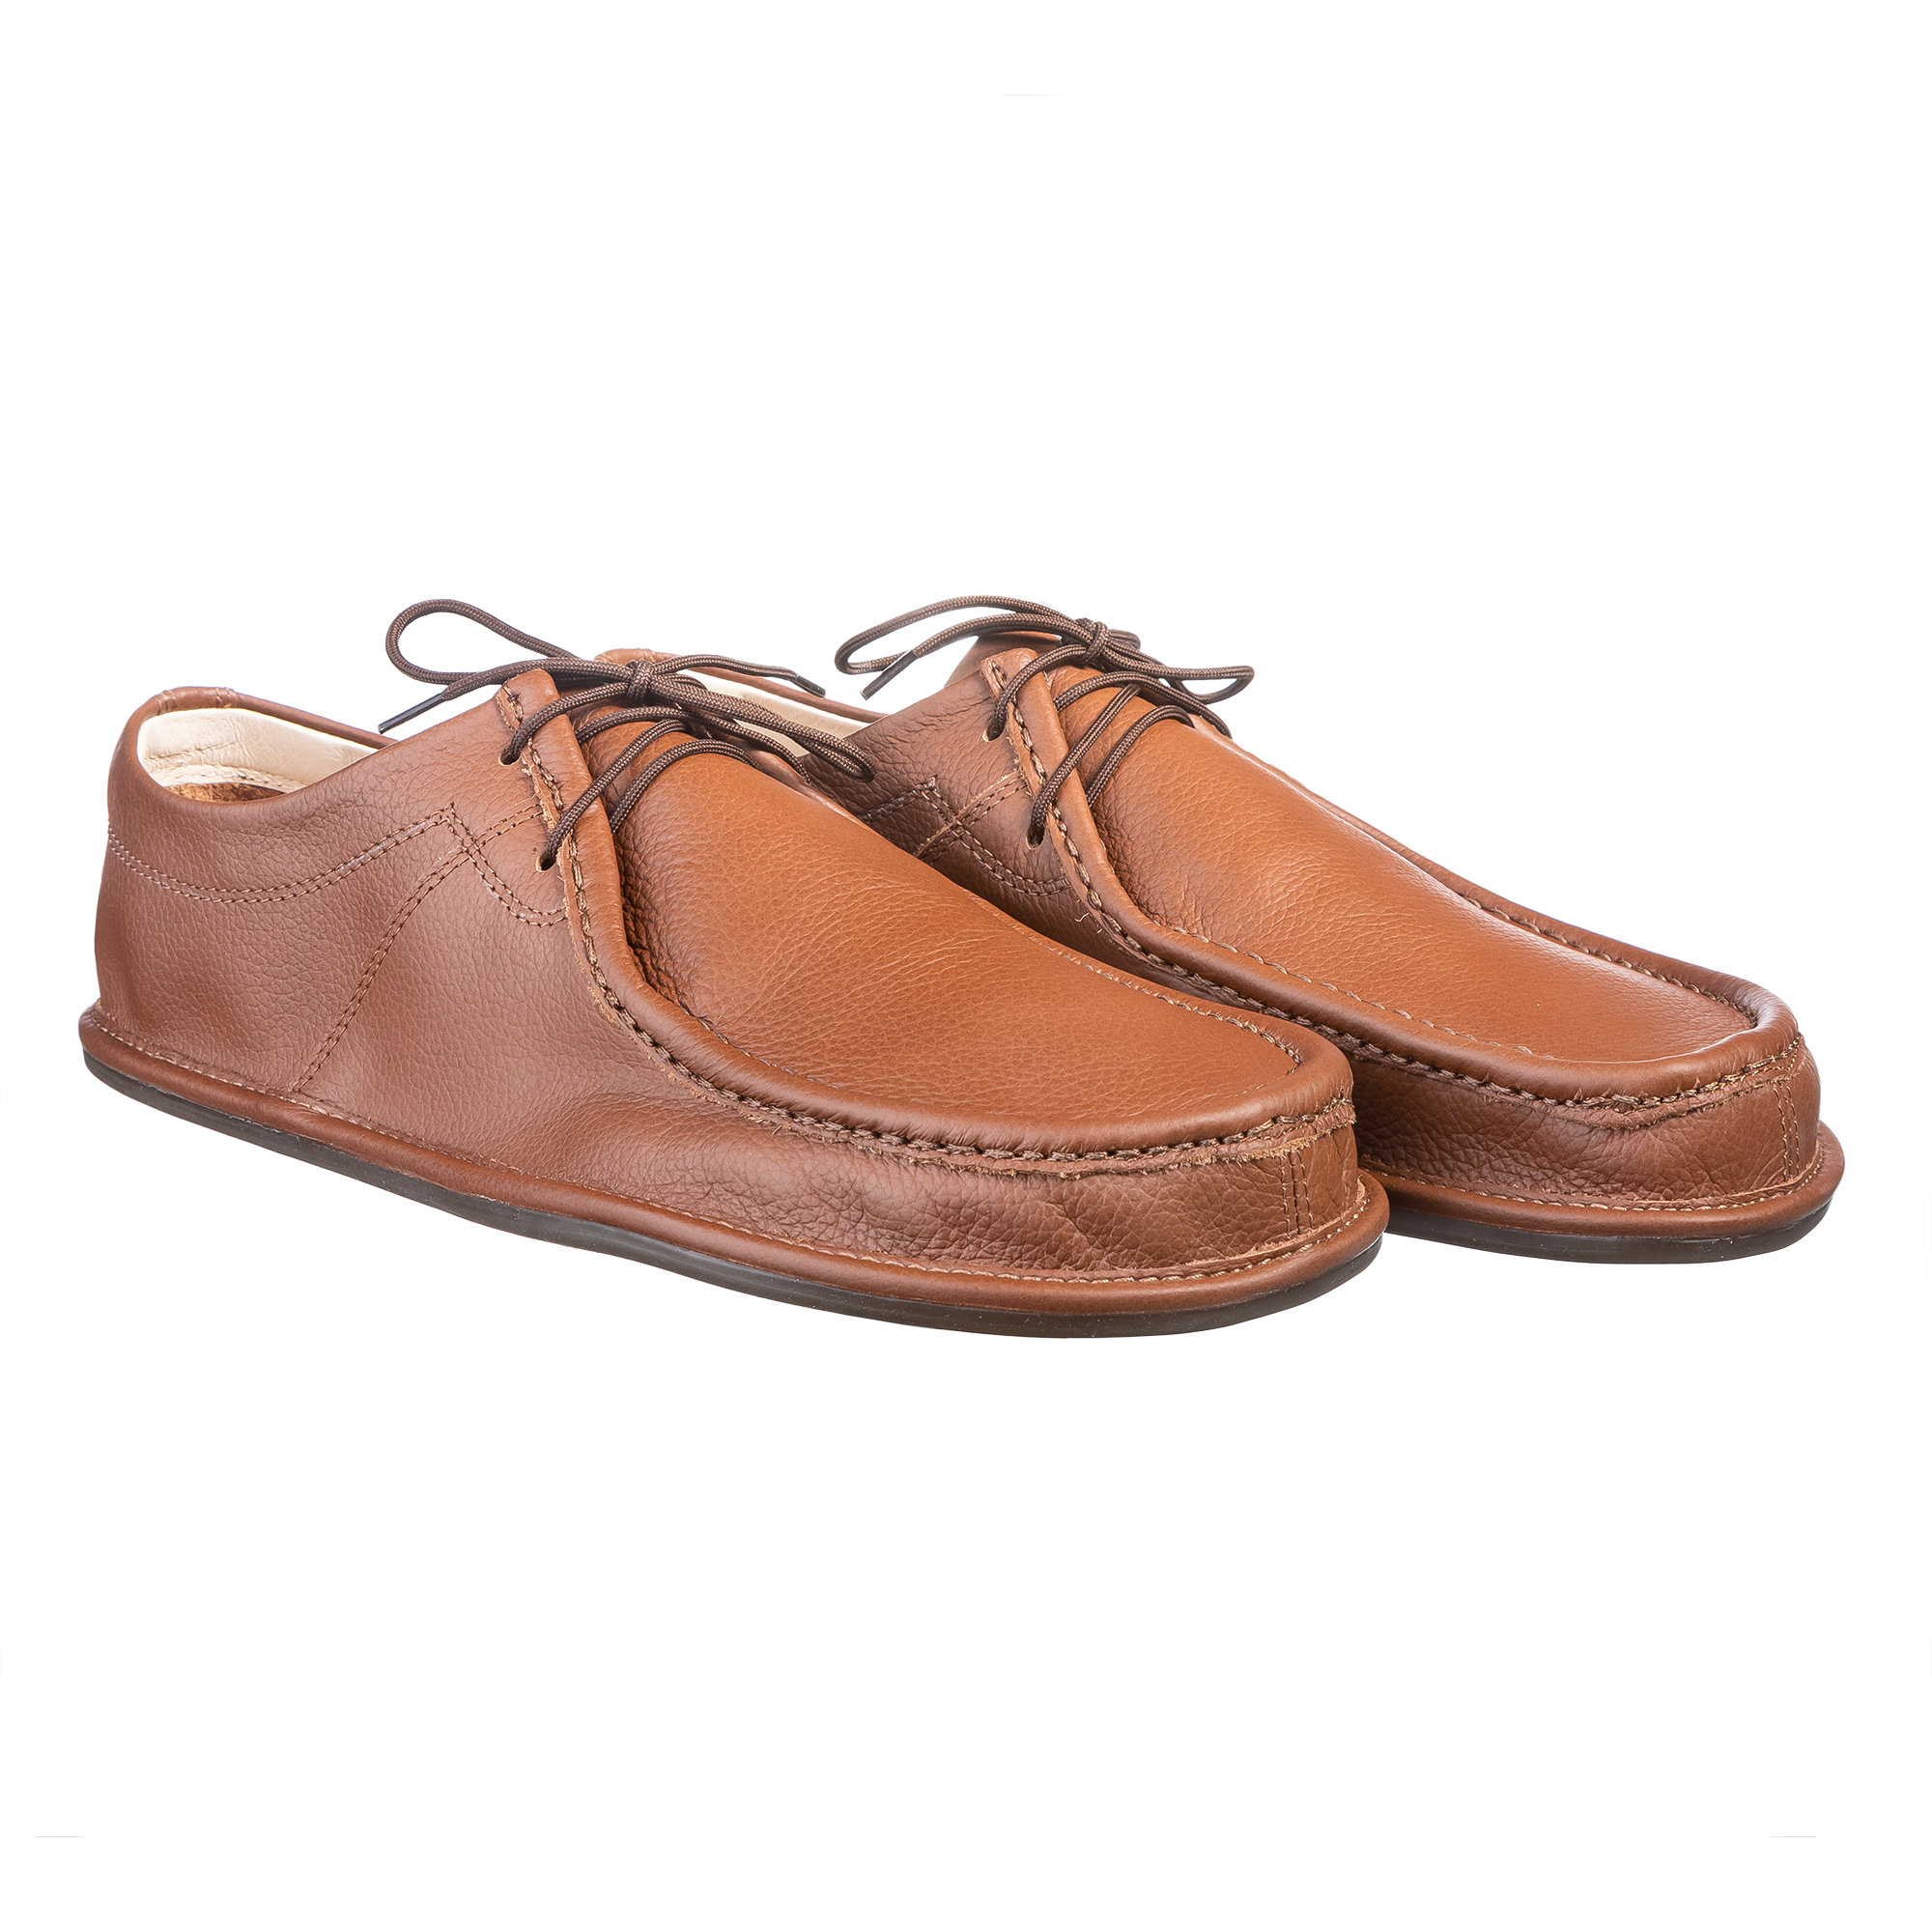 Birchbury Men's Brenston Wide Toe-Box Leather Minimalist Shoe Review -  Coach Helder